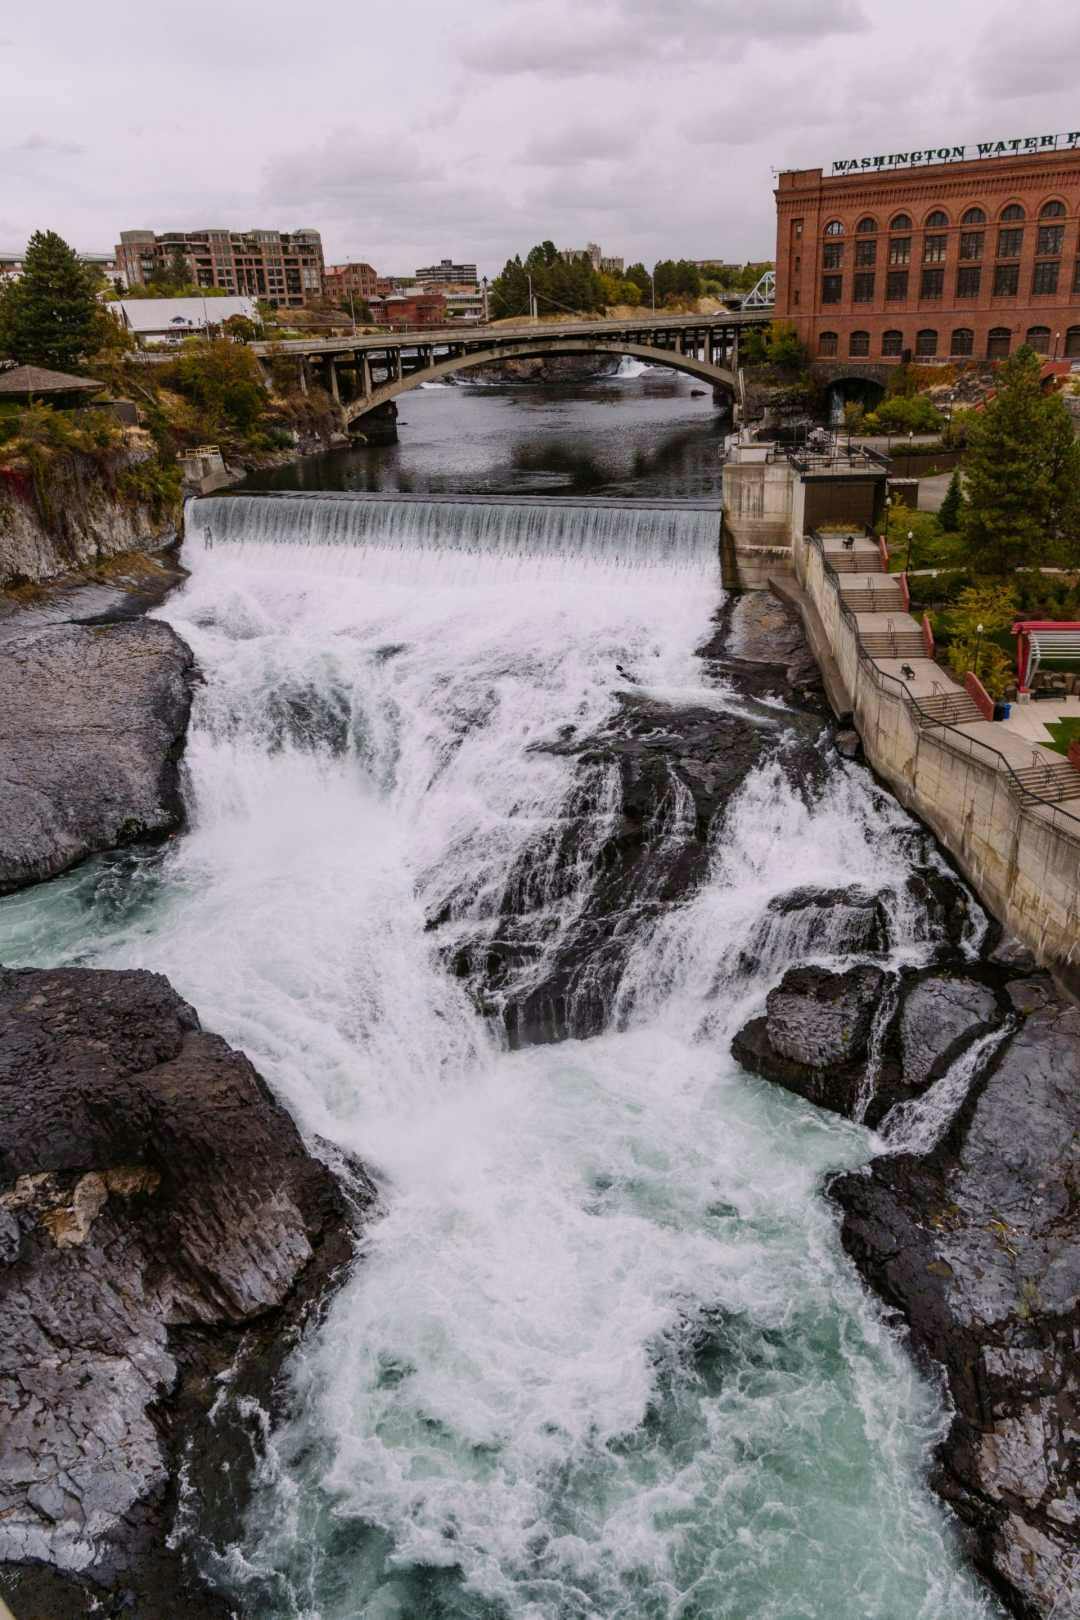 A bridge and man-made waterfall in Spokane